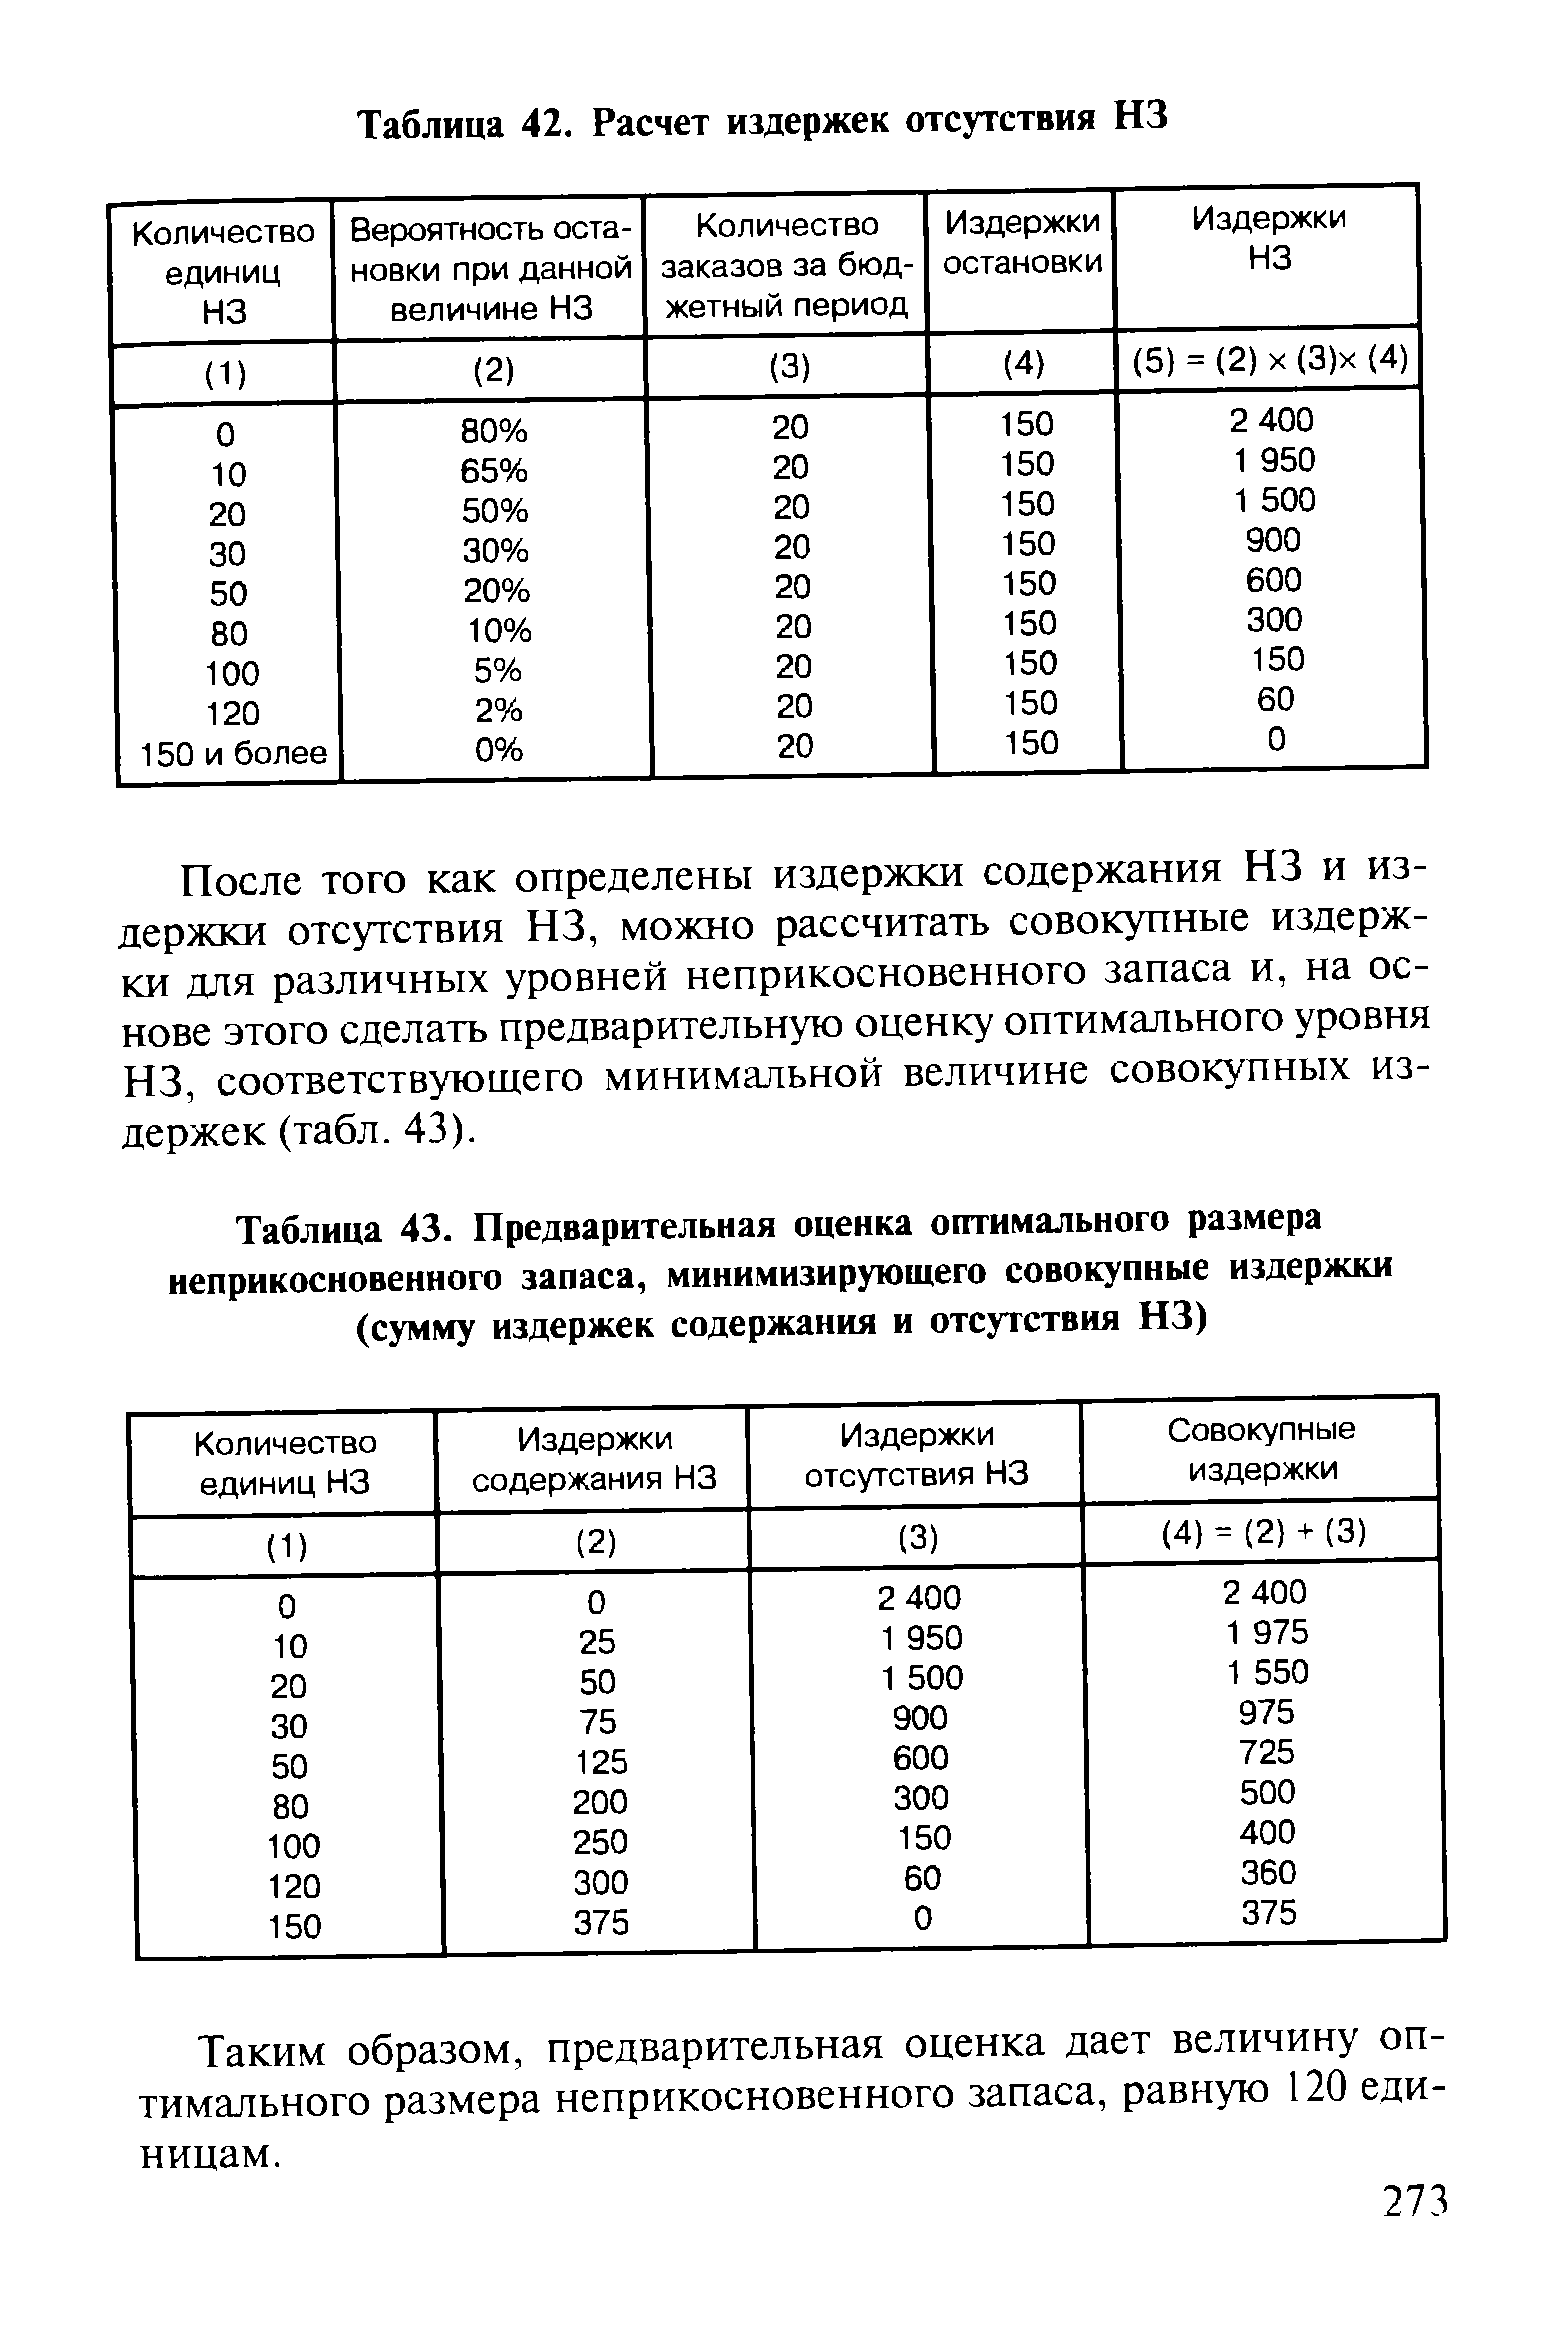 Таблица 43. Предварительная <a href="/info/20727">оценка оптимального</a> размера
